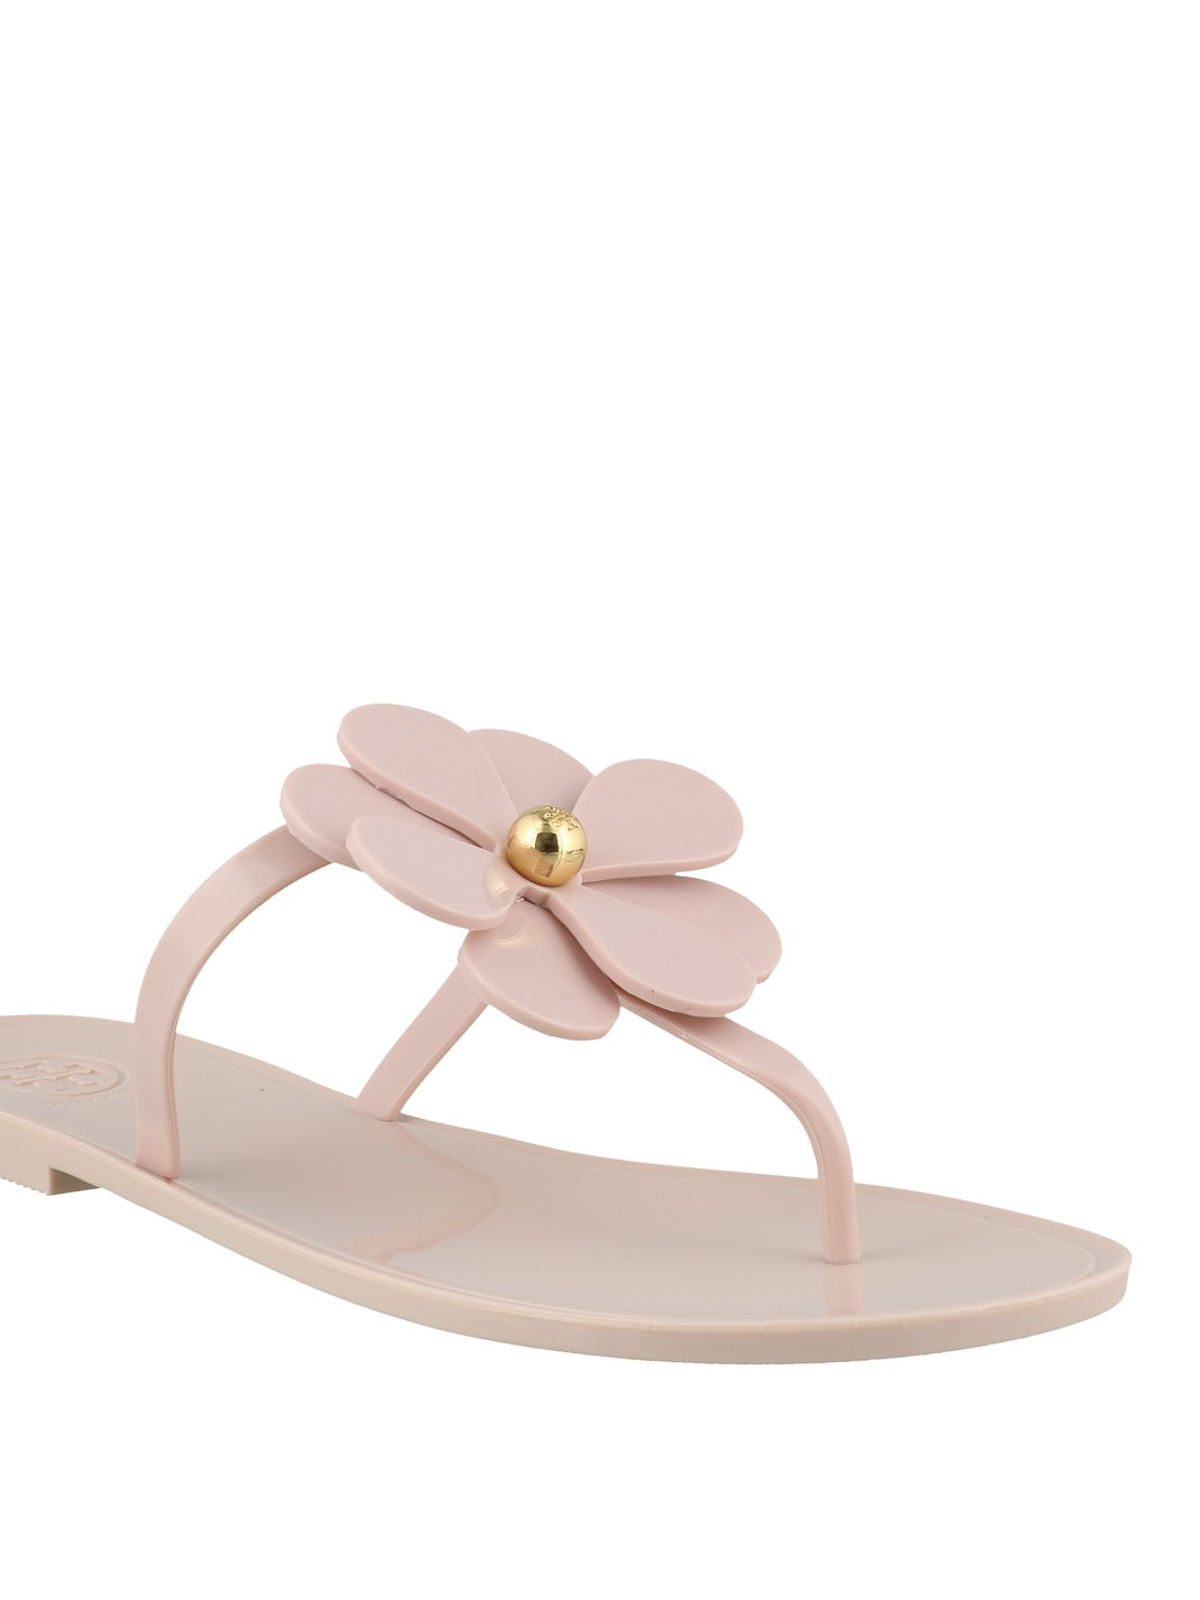 Flip flops Tory Burch - Flower Jelly thong sandals - 56155684 